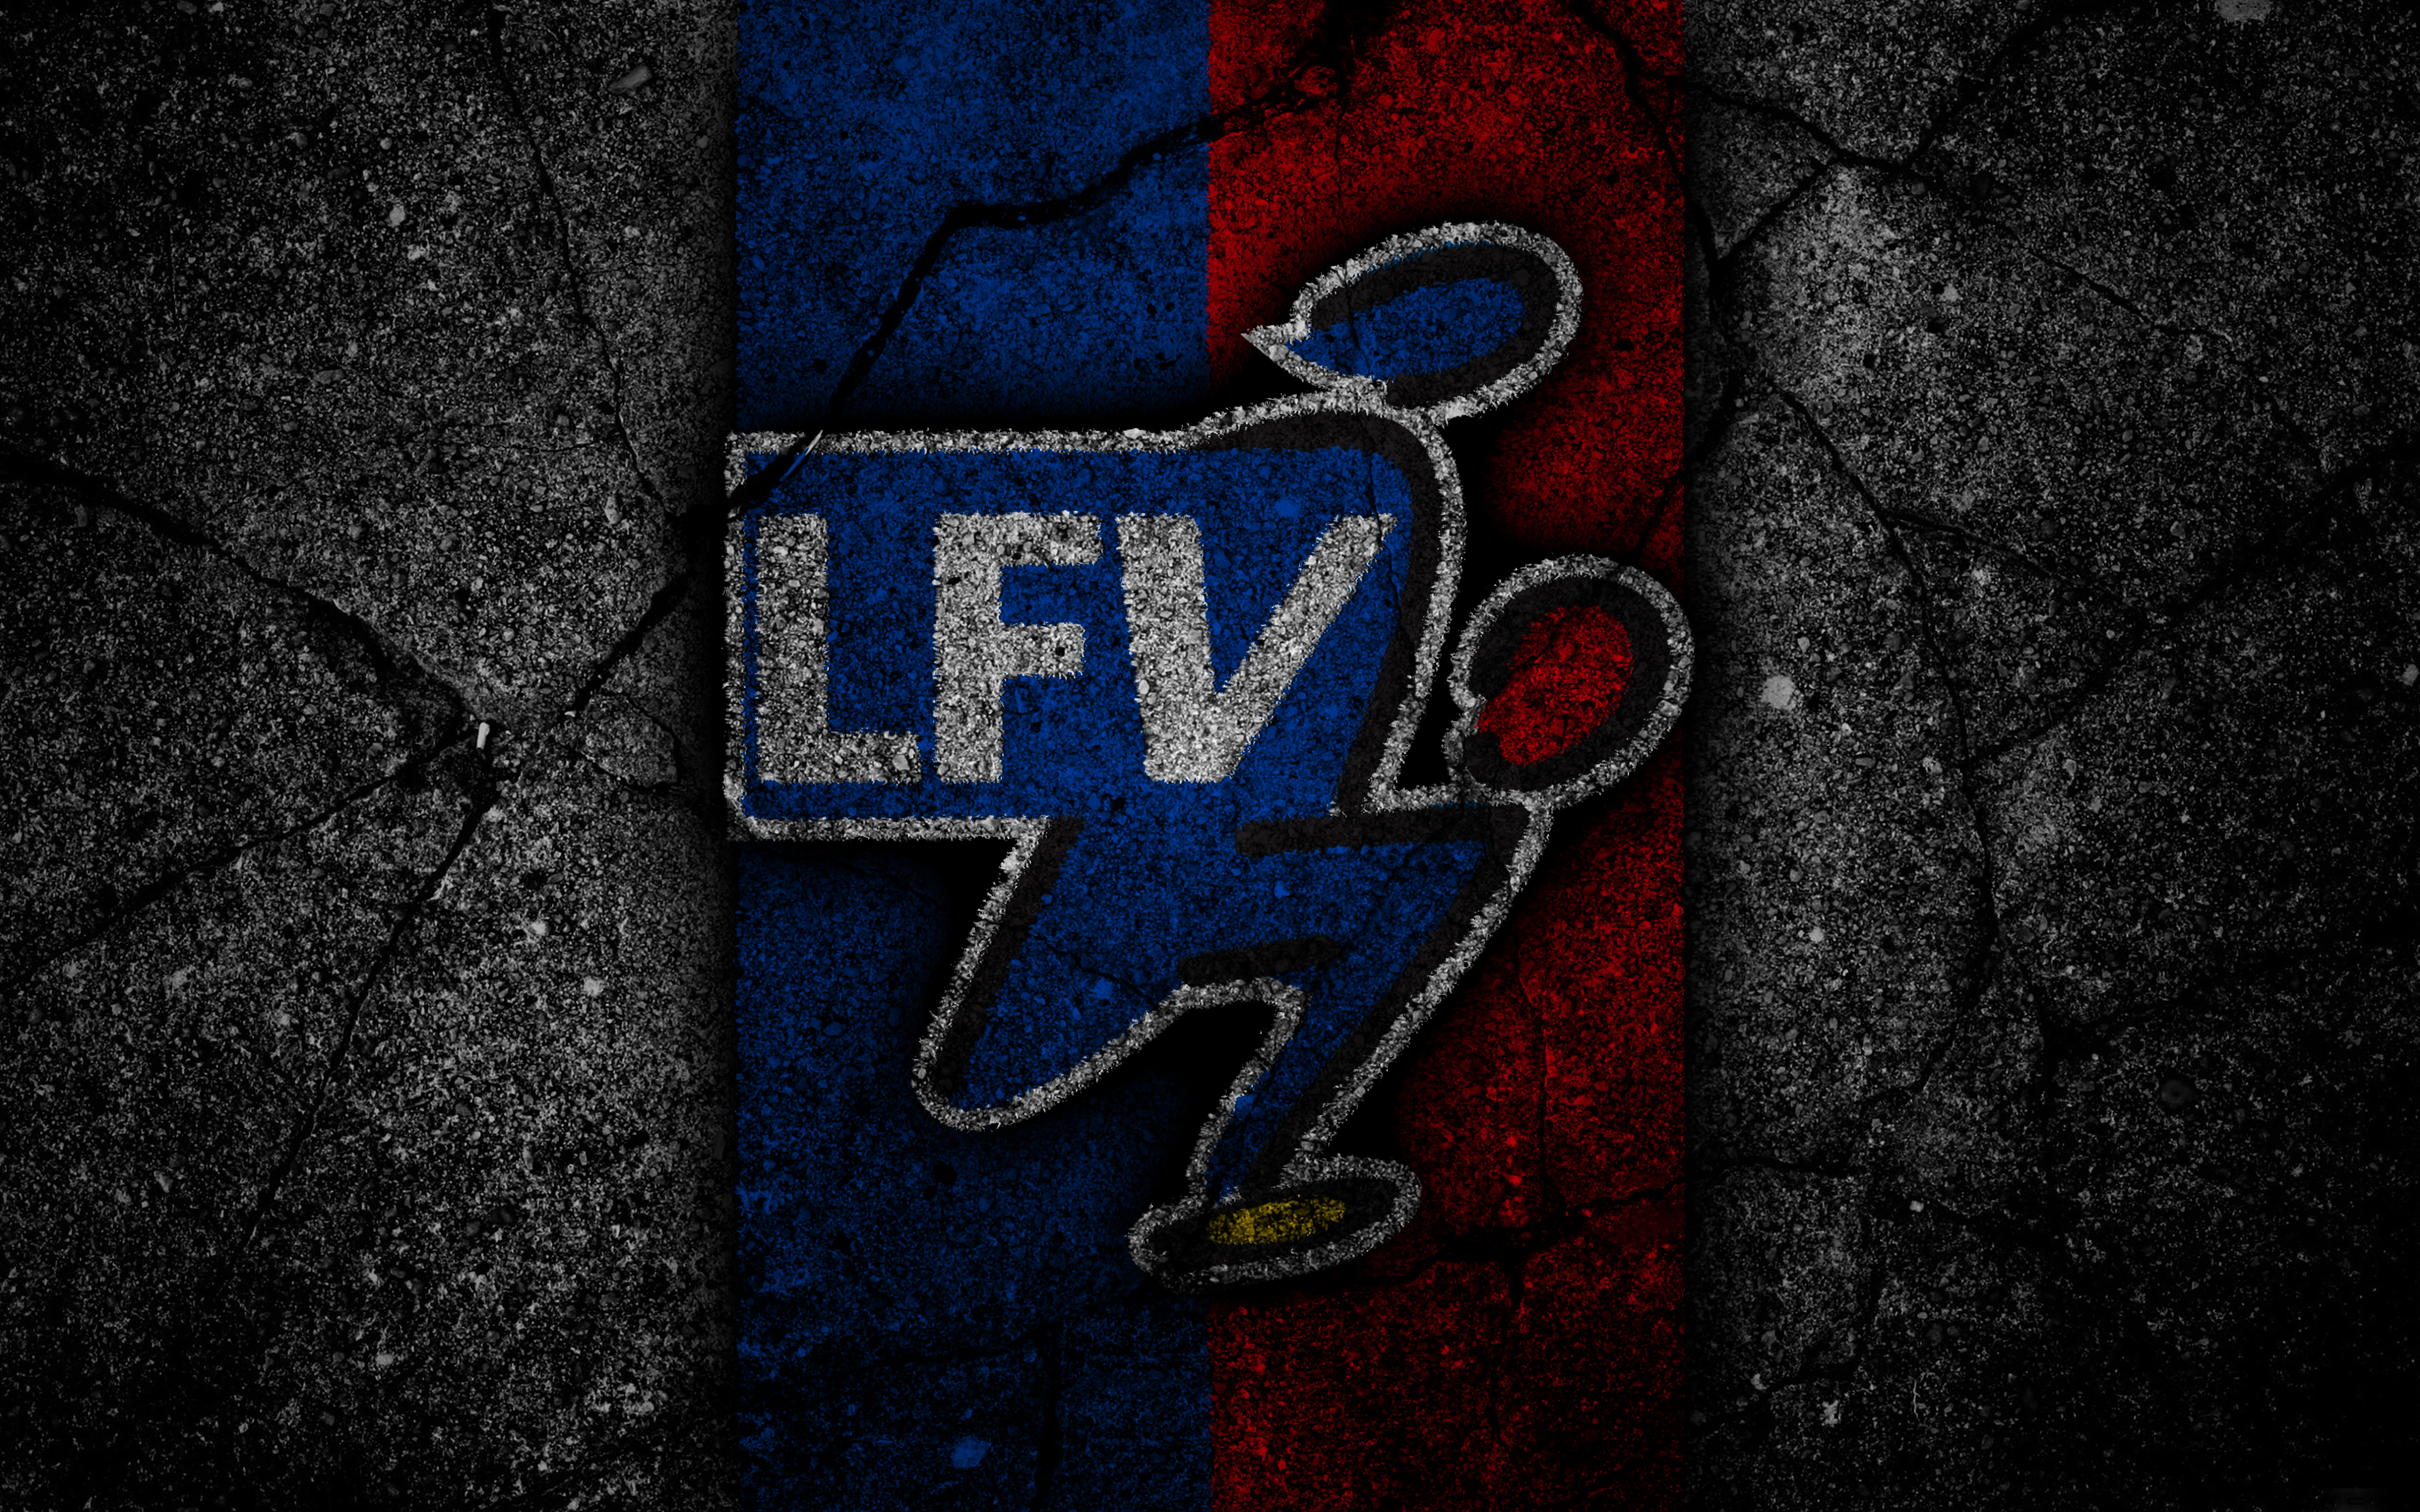 Liechtenstein National Football Team Wallpapers